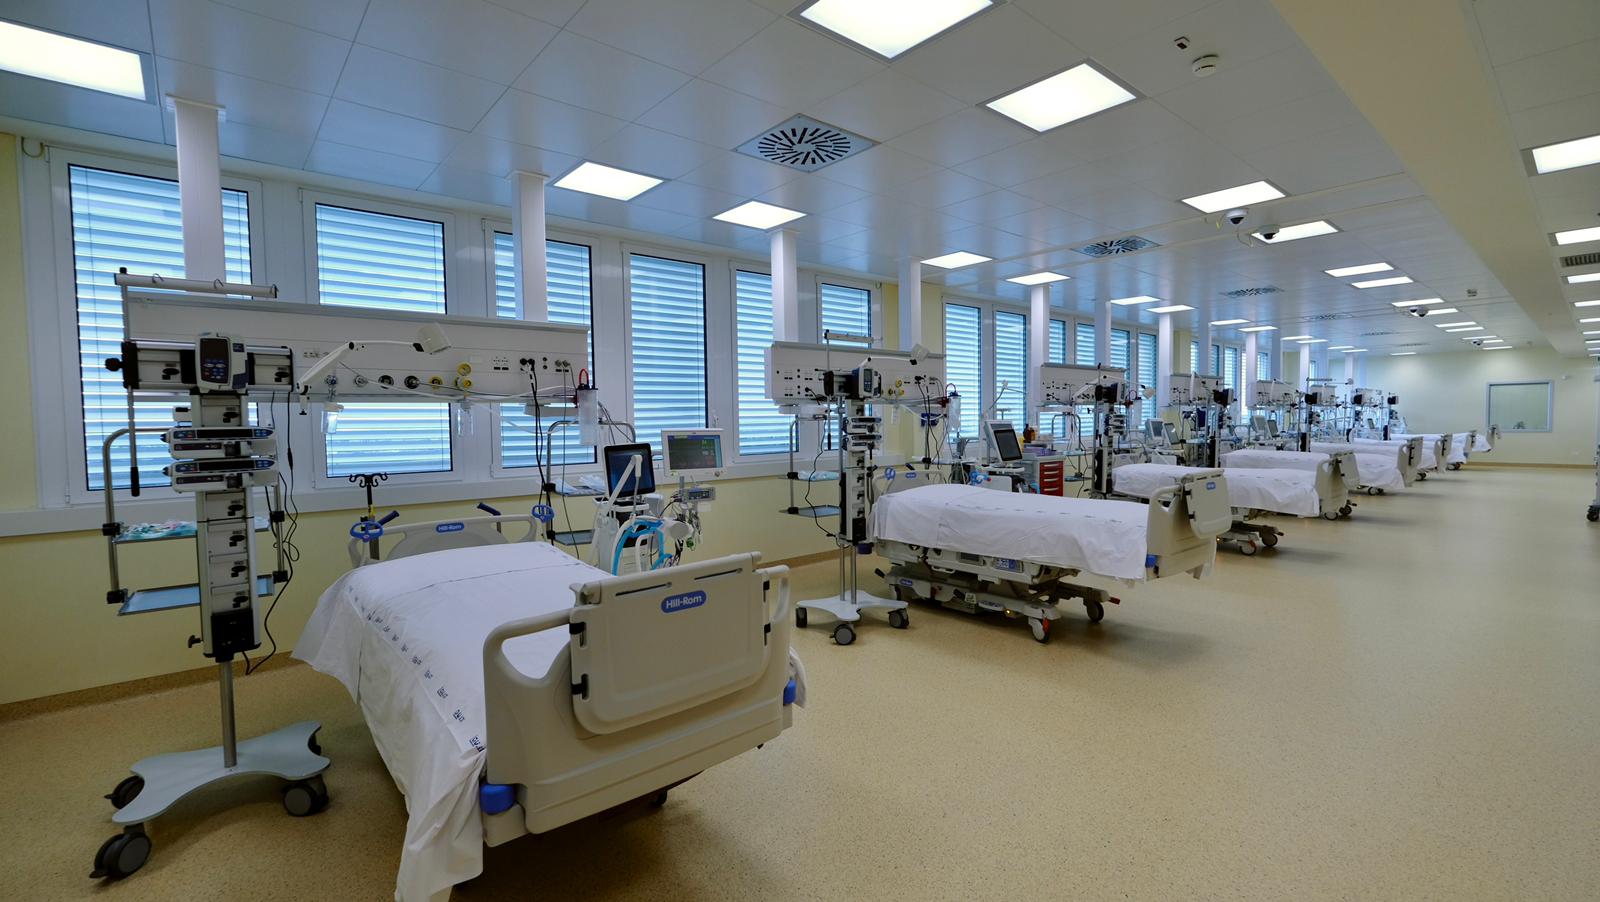 Galleria Potenziamento della rete ospedaliera. Attivati sedici posti di terapia intensiva respiratoria Covid al Dea “V. Fazzi” - Diapositiva 1 di 19